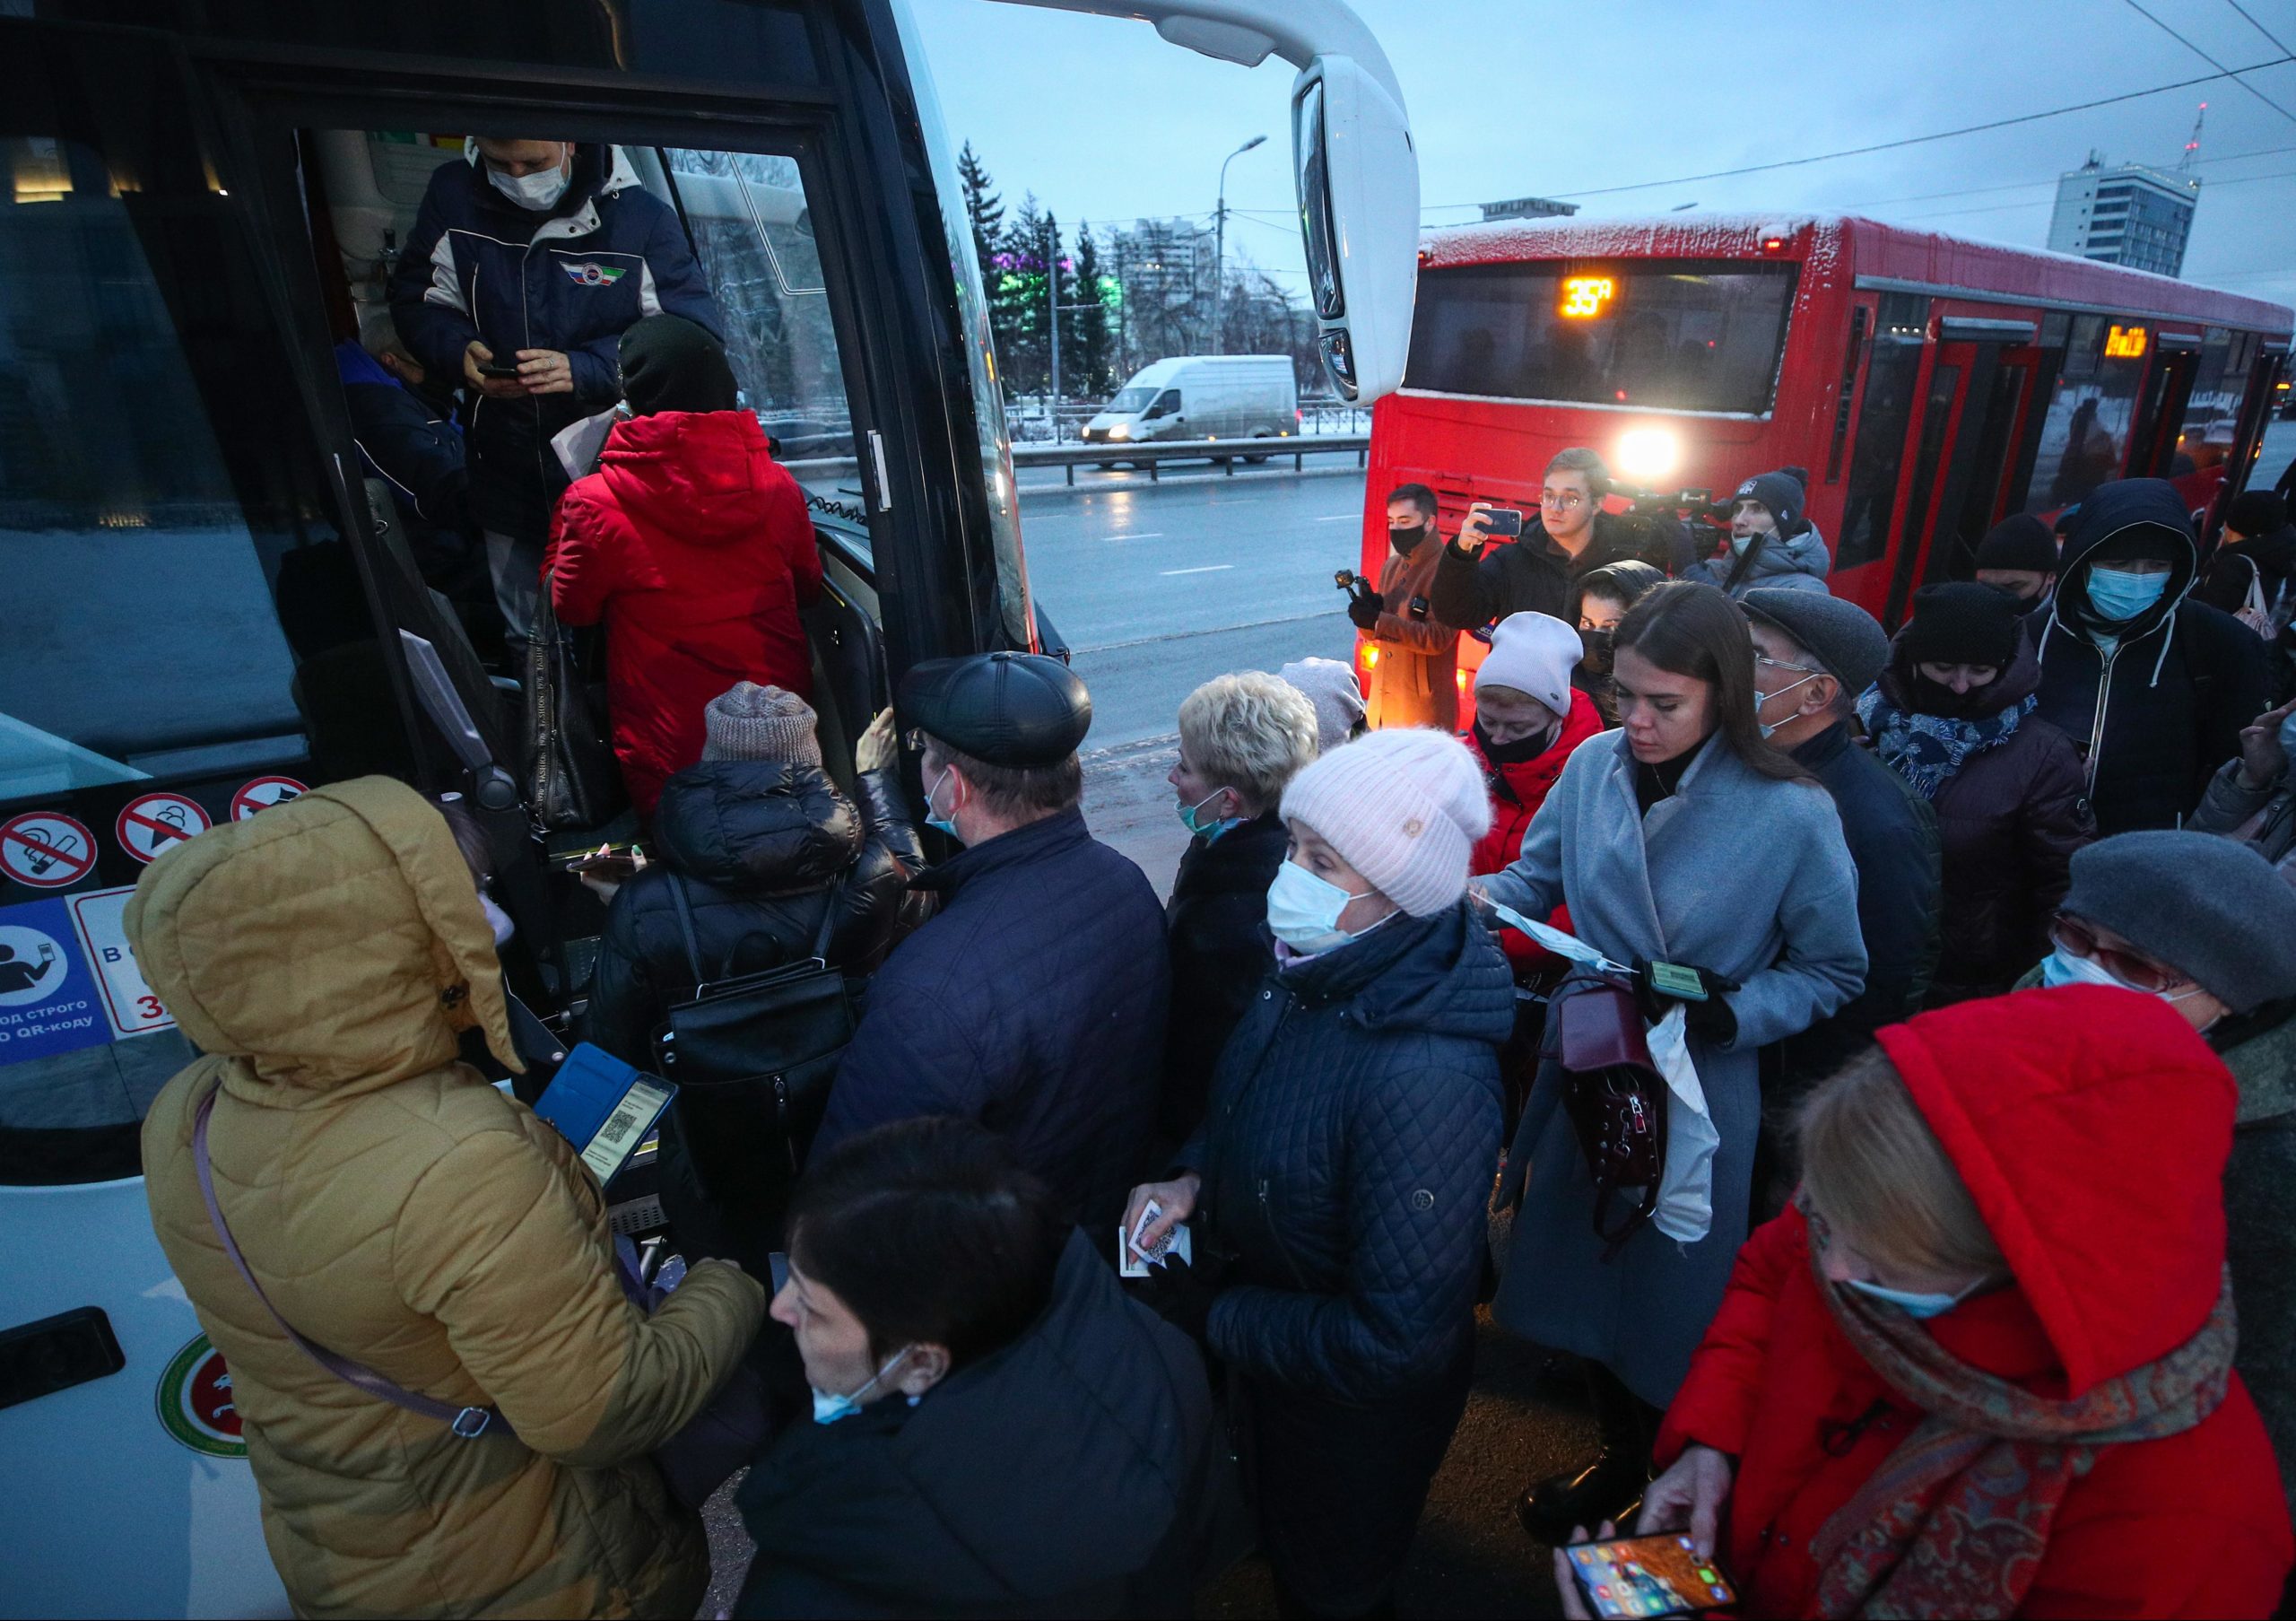 22 ноября 2020. Пассажиры общественного транспорта. Люди в автобусе. Пассажиры в автобусах Казани. Скандал в автобусе.